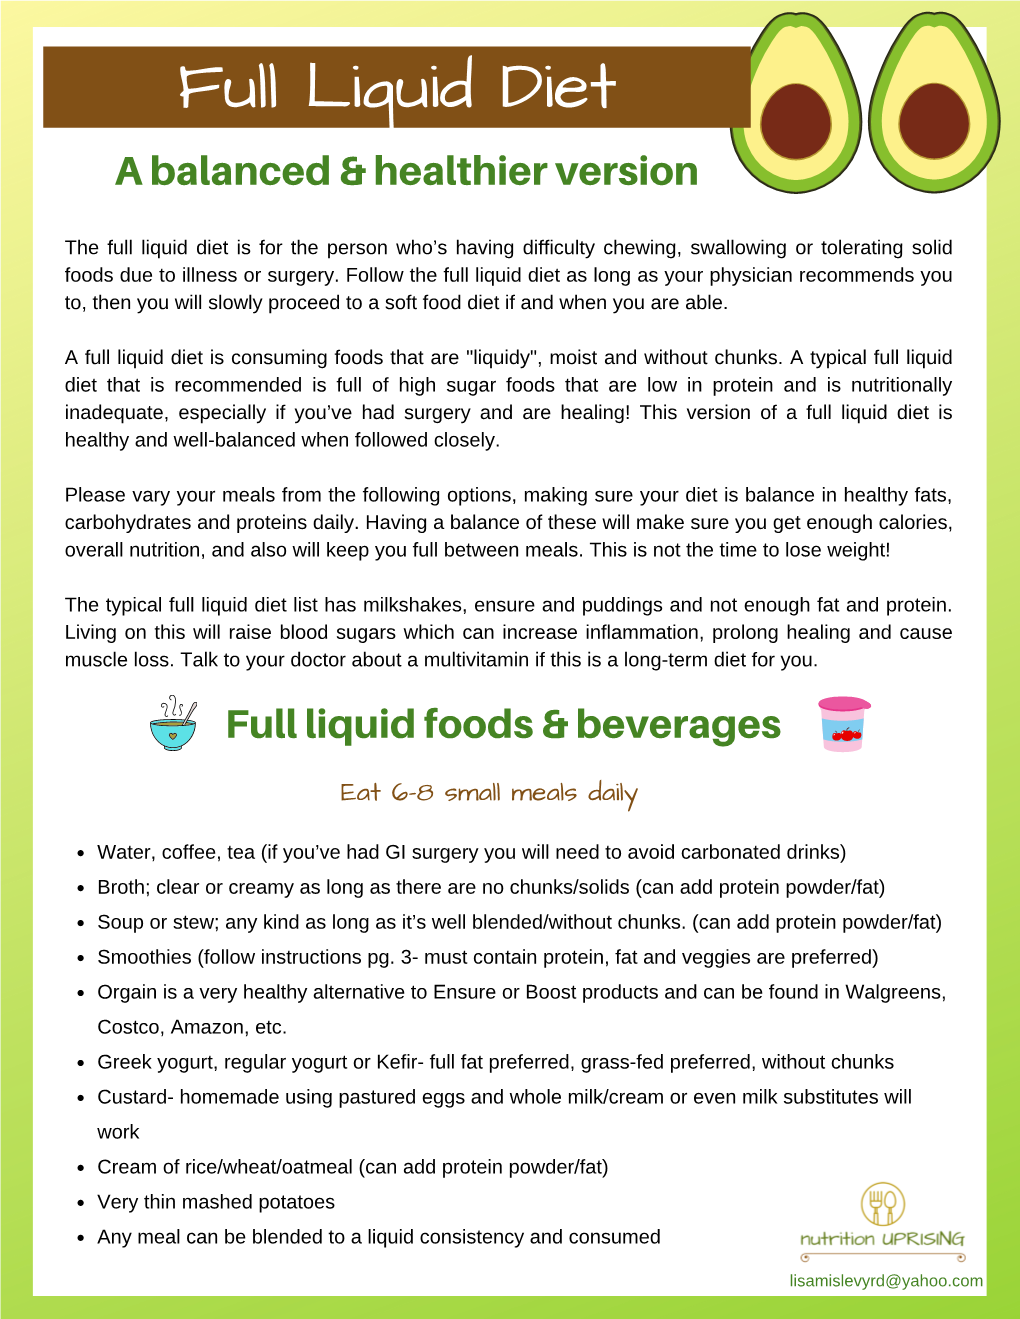 Full Liquid Diet a Balanced & Healthier Version